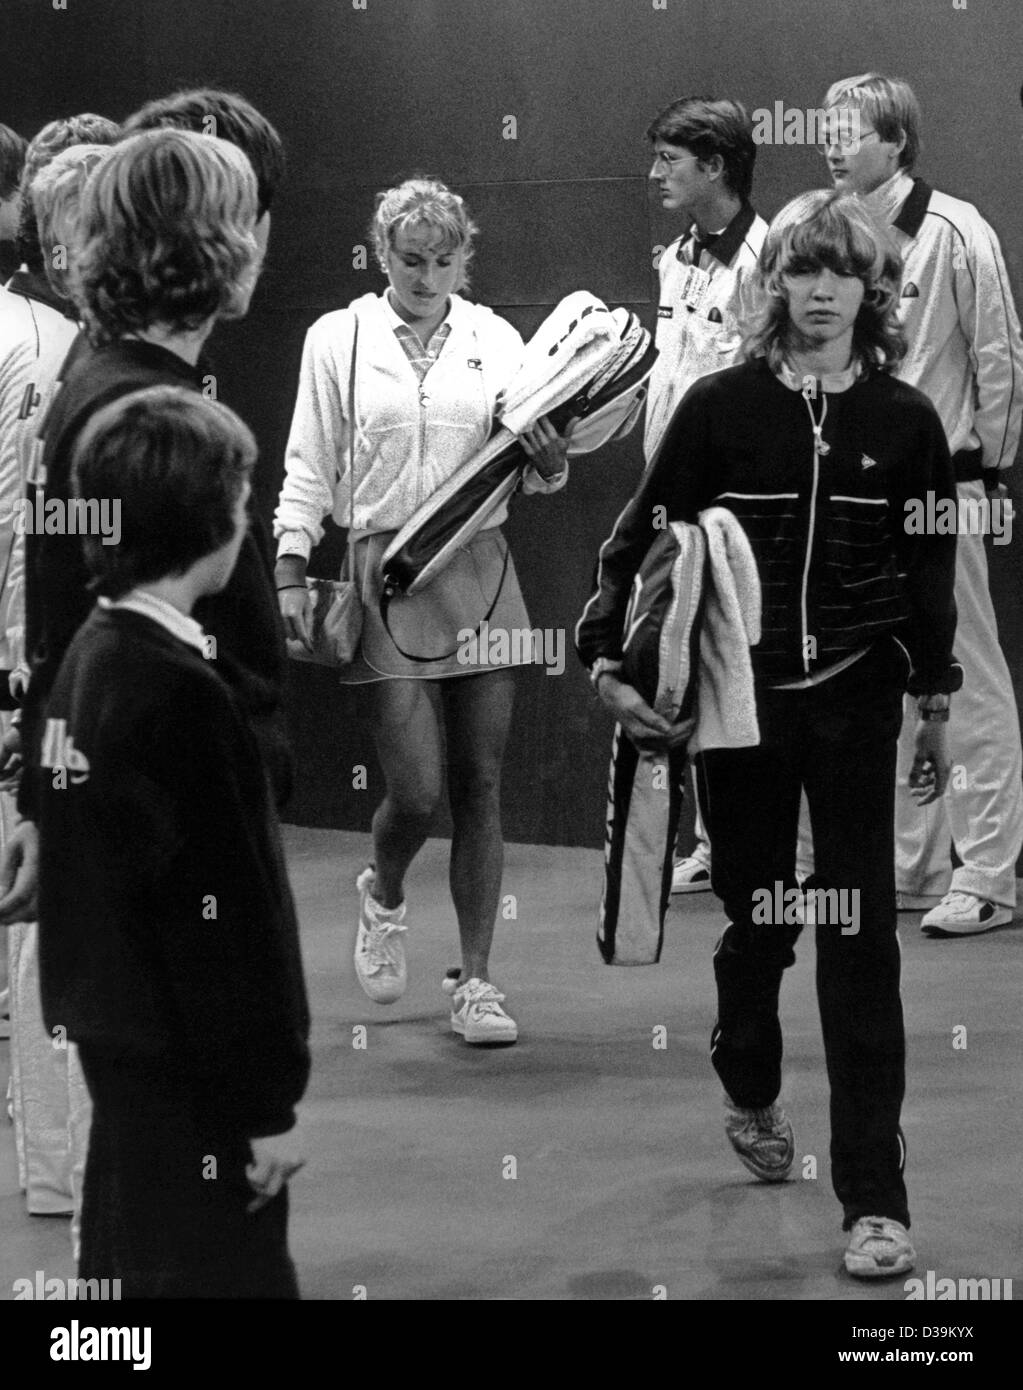 (Dpa) - 13-Year-Old Steffi Graf kommt selbstbewusst zu einem Tennis-Match gegen amerikanische Tracy Austin in Filderstadt bei Stuttgart, 18. Oktober 1982. Einige Jahre später wurde der Teenager Tennis-Star weltweit Nummer 1 Tennisspielerin. Stockfoto